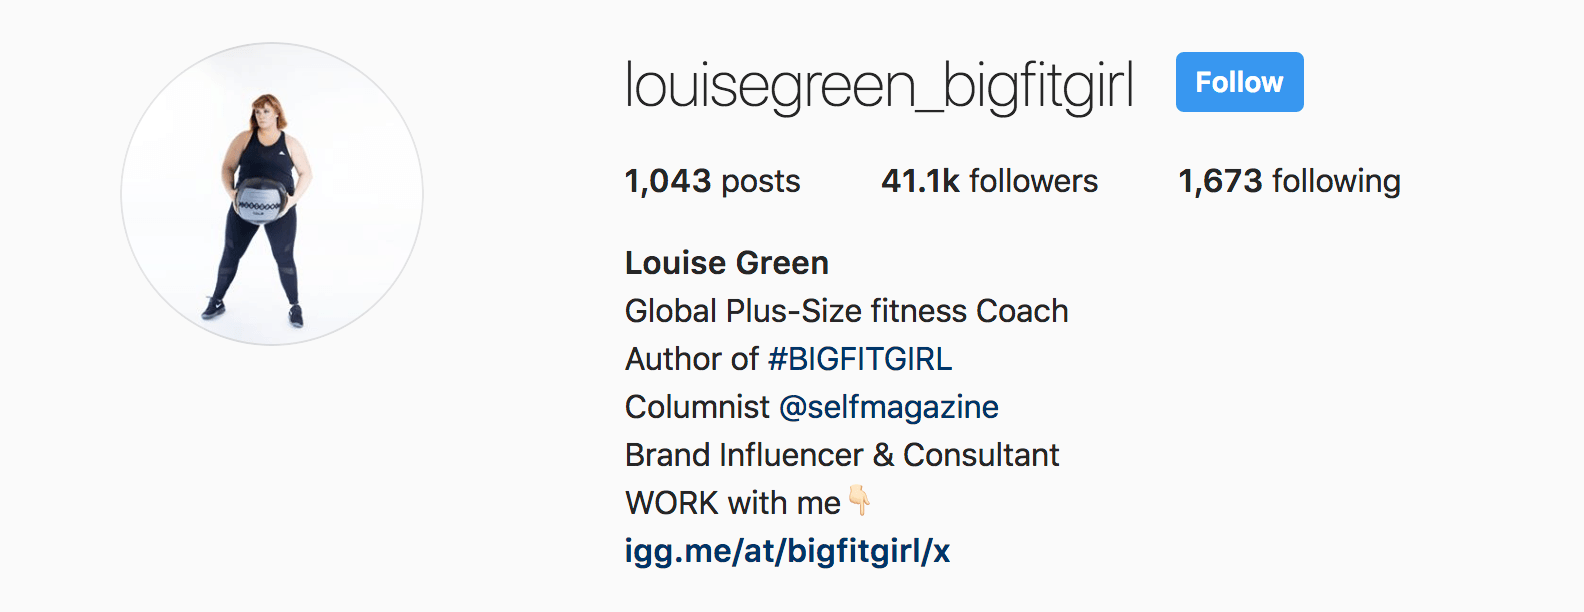 200+ био-идей из Instagram, которые вы можете скопировать и вставить